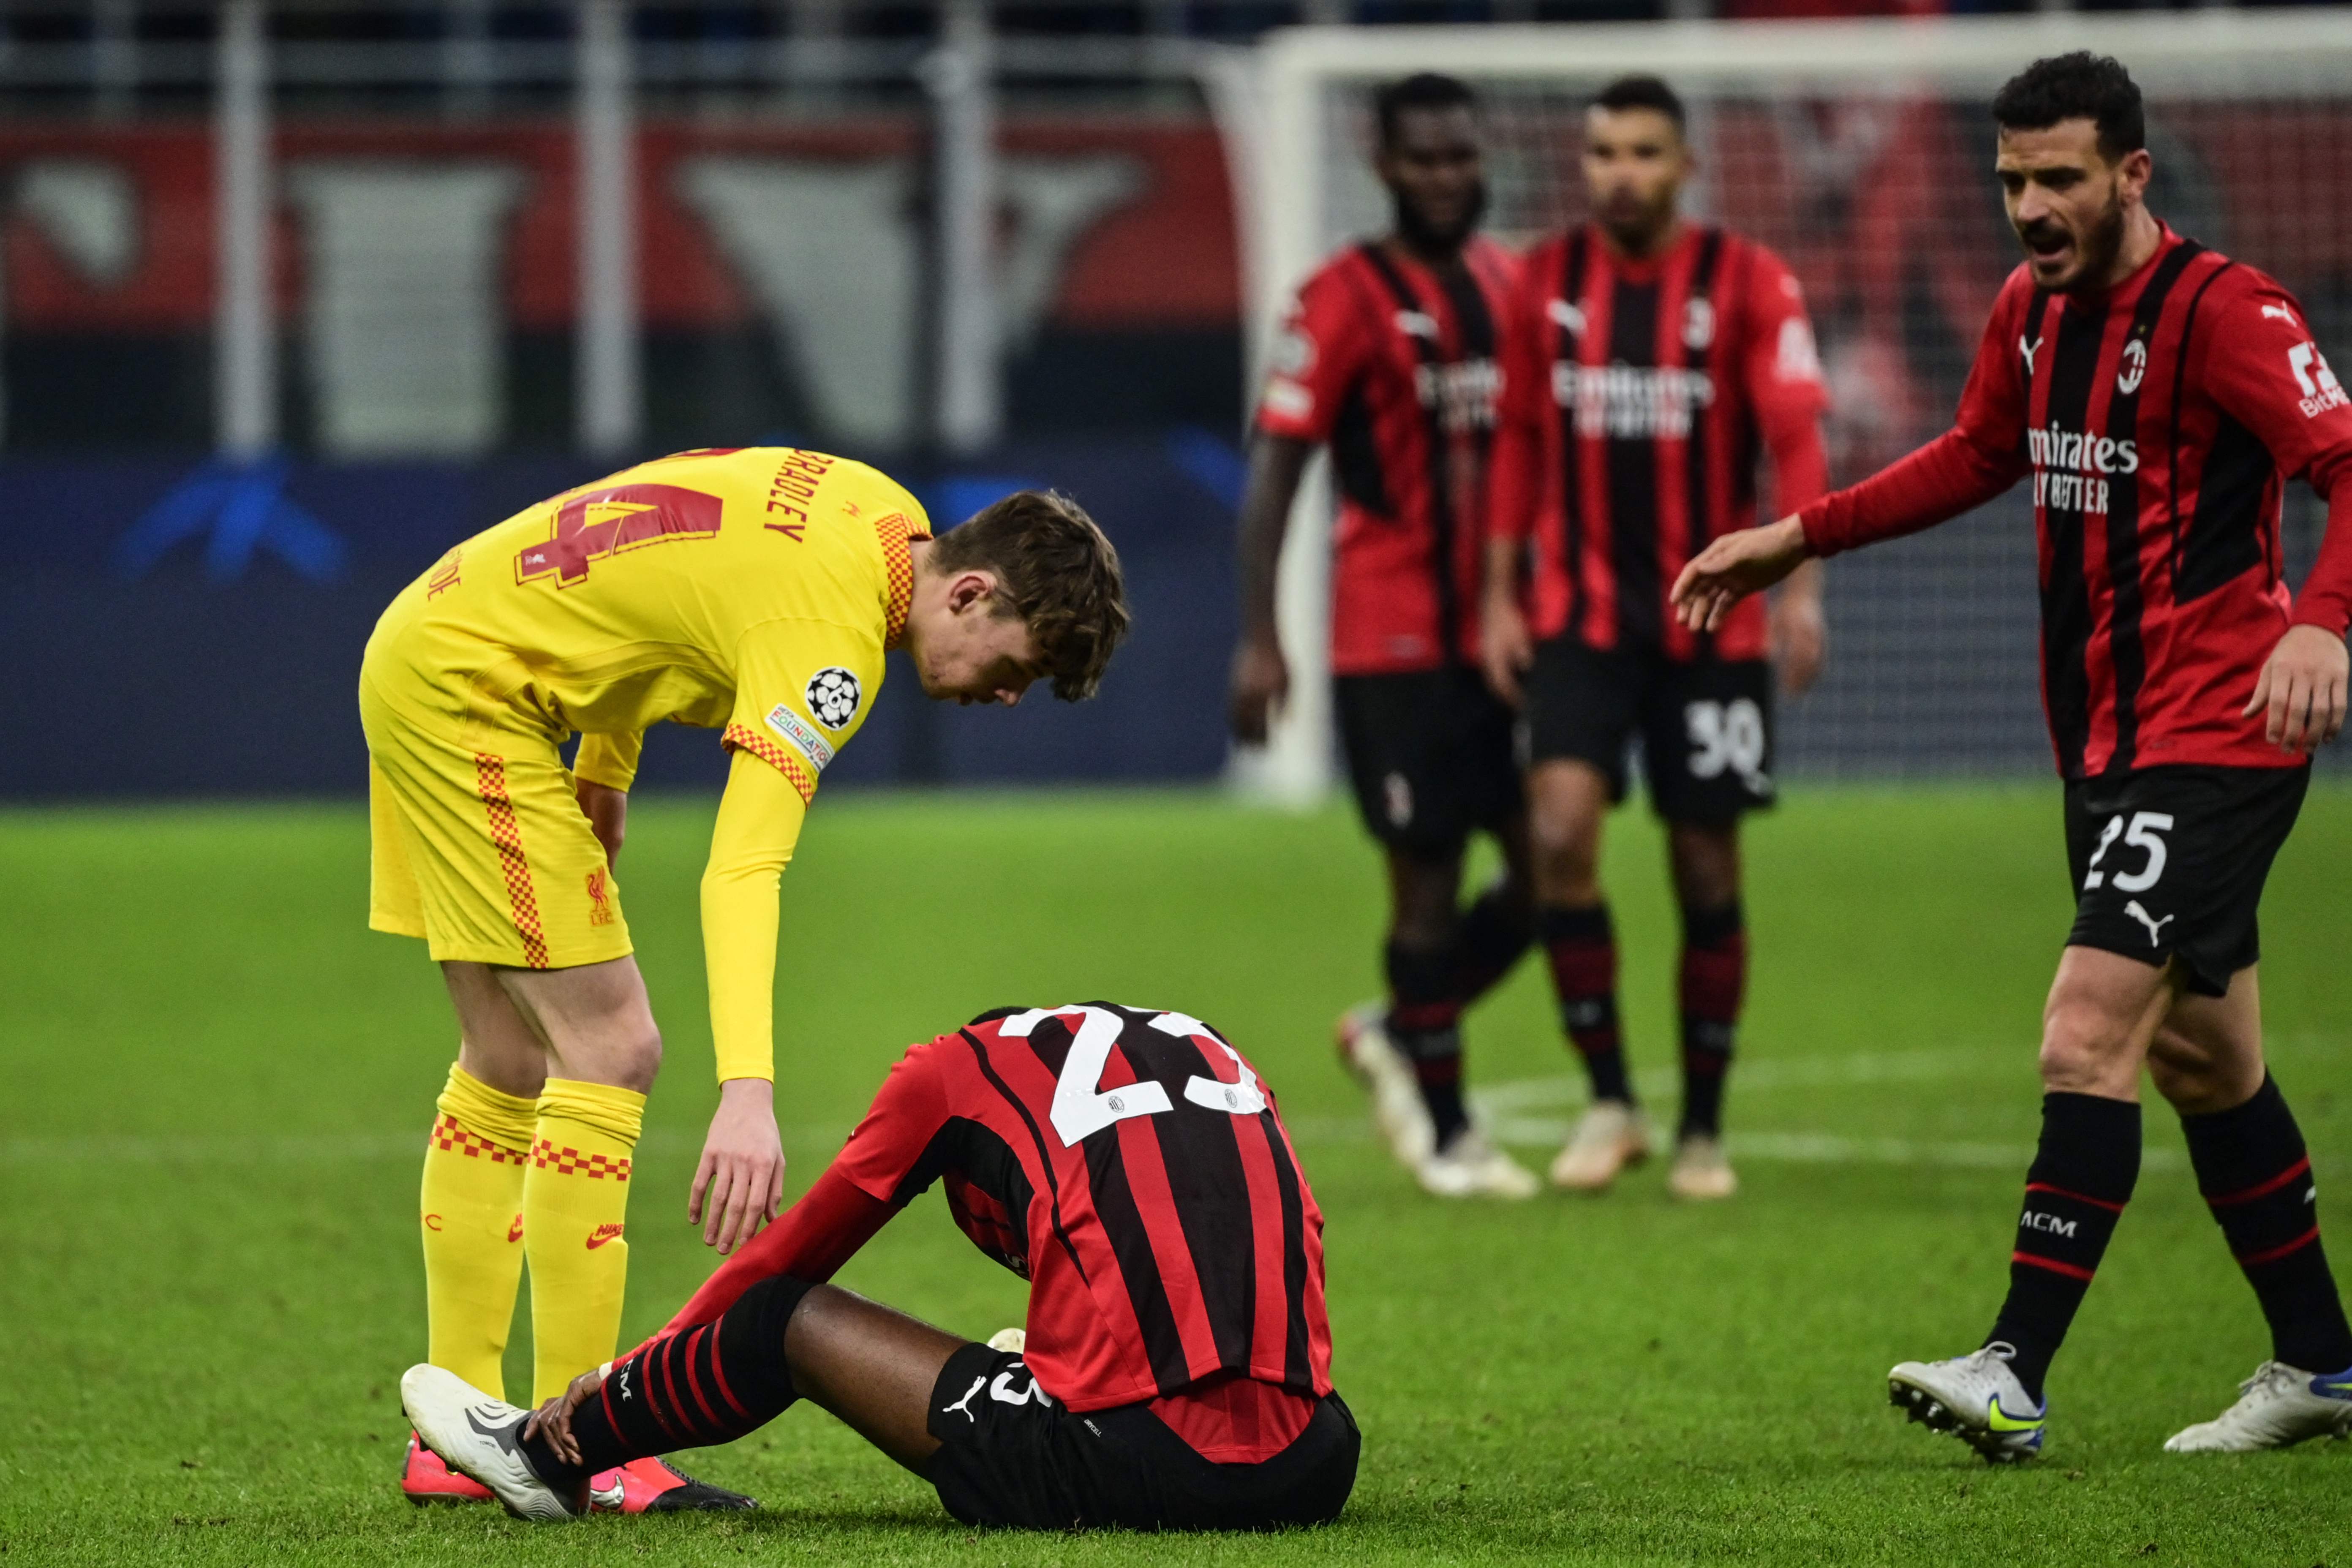 Los jugadores del AC Milán lamentaron la eliminación al final del juego. (Foto Prensa Libre: AFP)